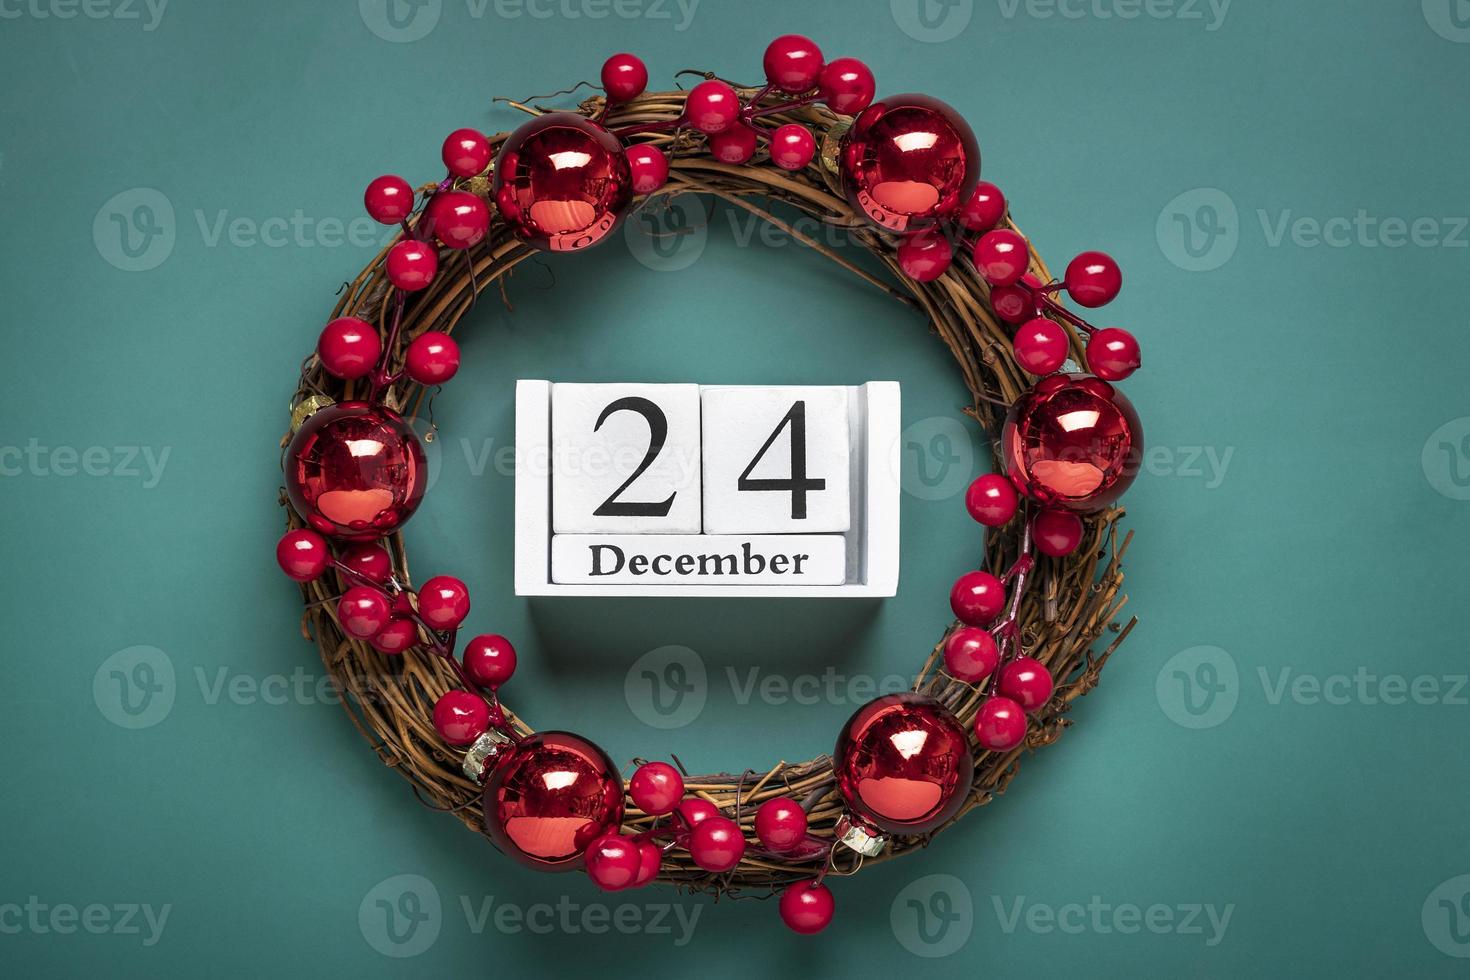 corona de navidad decorada con bayas rojas, calendario de madera fecha 24 de diciembre aislado sobre fondo verde concepto de preparación de navidad, tarjeta de deseos de atmósfera corona de navidad hecha a mano plana foto